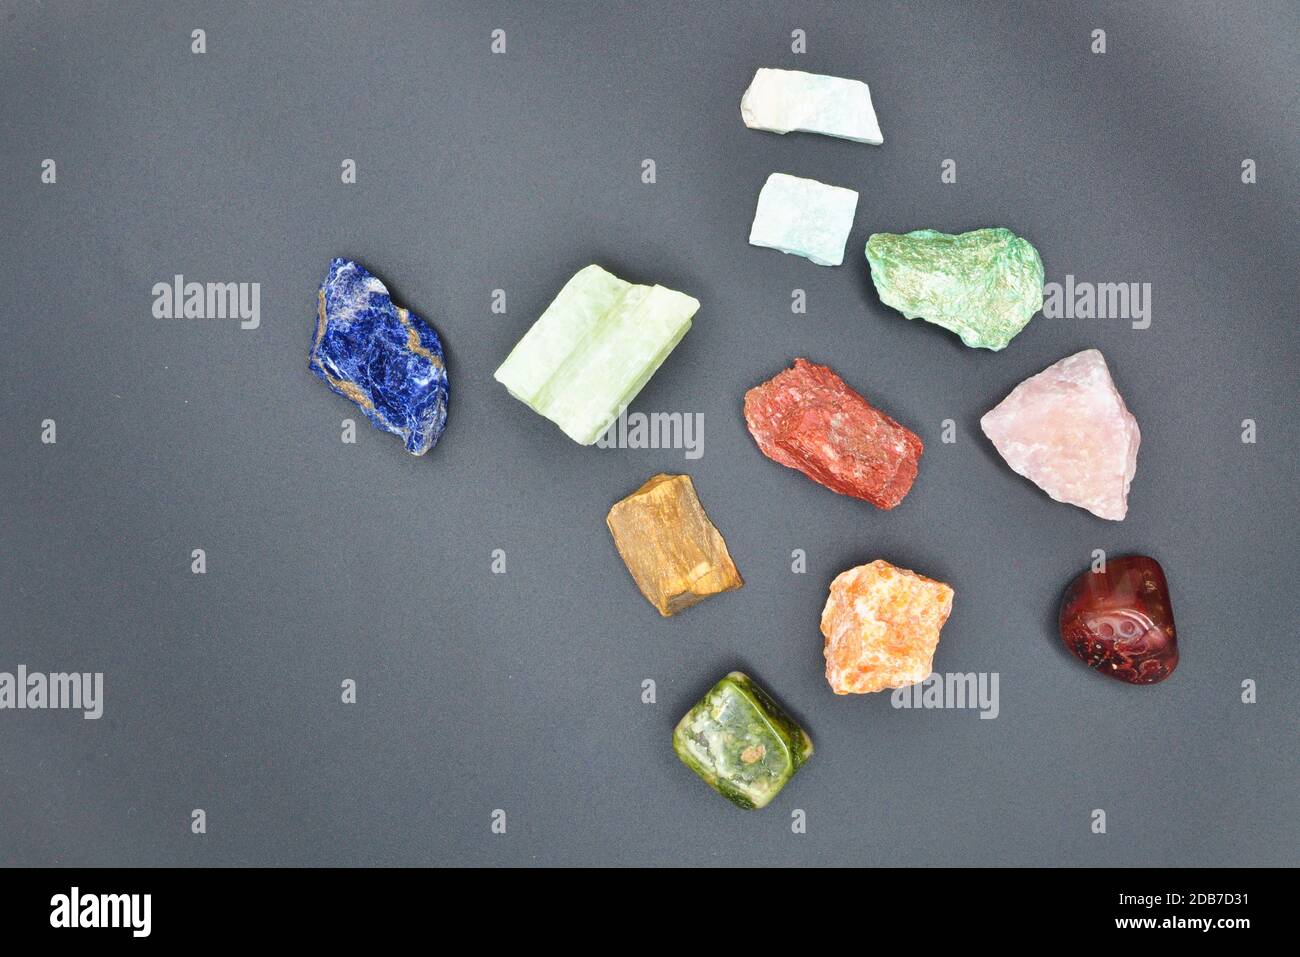 Sammlung von wertvollen Mineralien und farbigen Edelsteinen isoliert auf schwarz Hintergrund Stockfoto